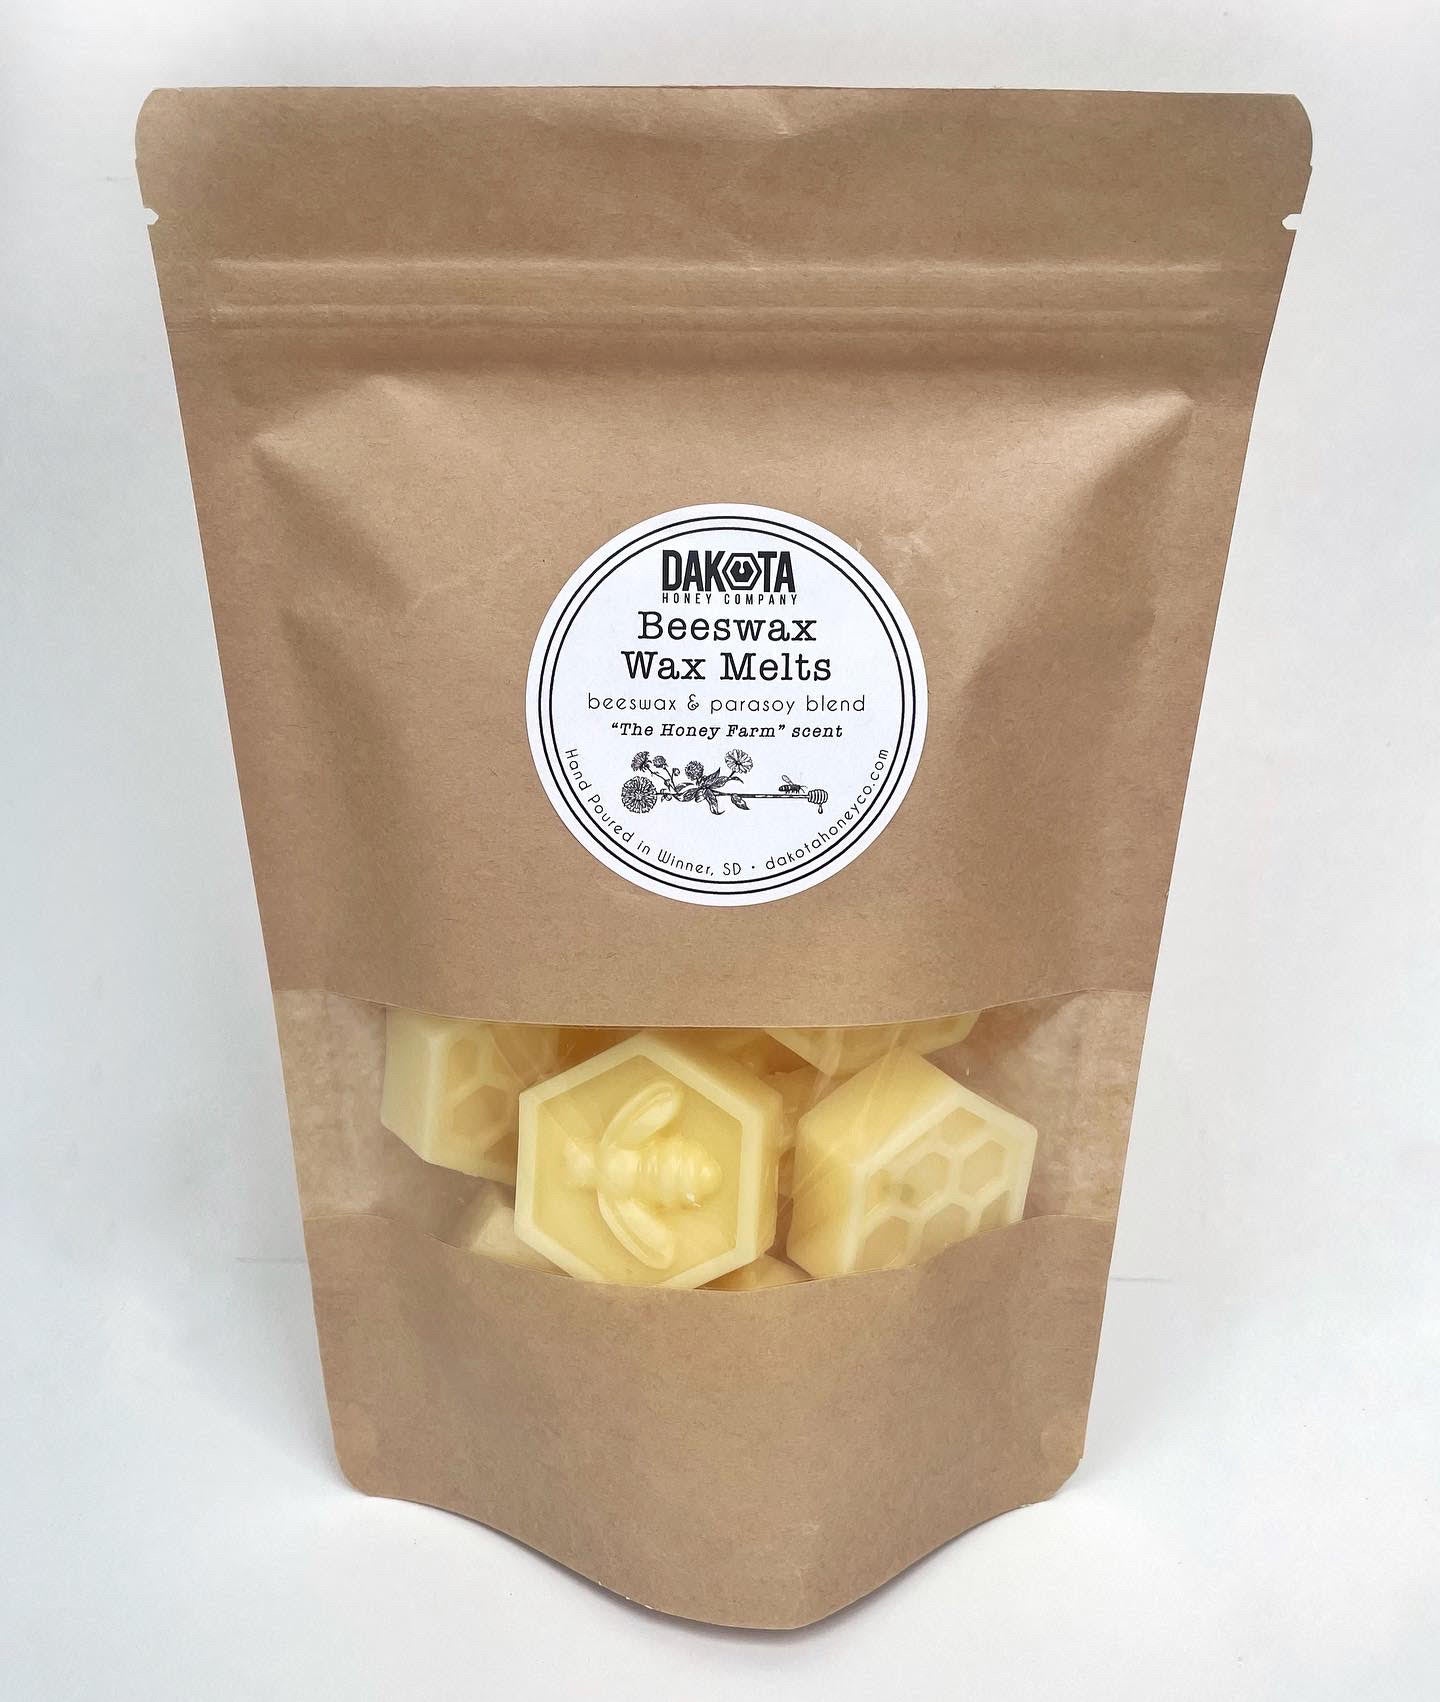 A brown bag of beeswax wax melts from Dakota Honey Co.